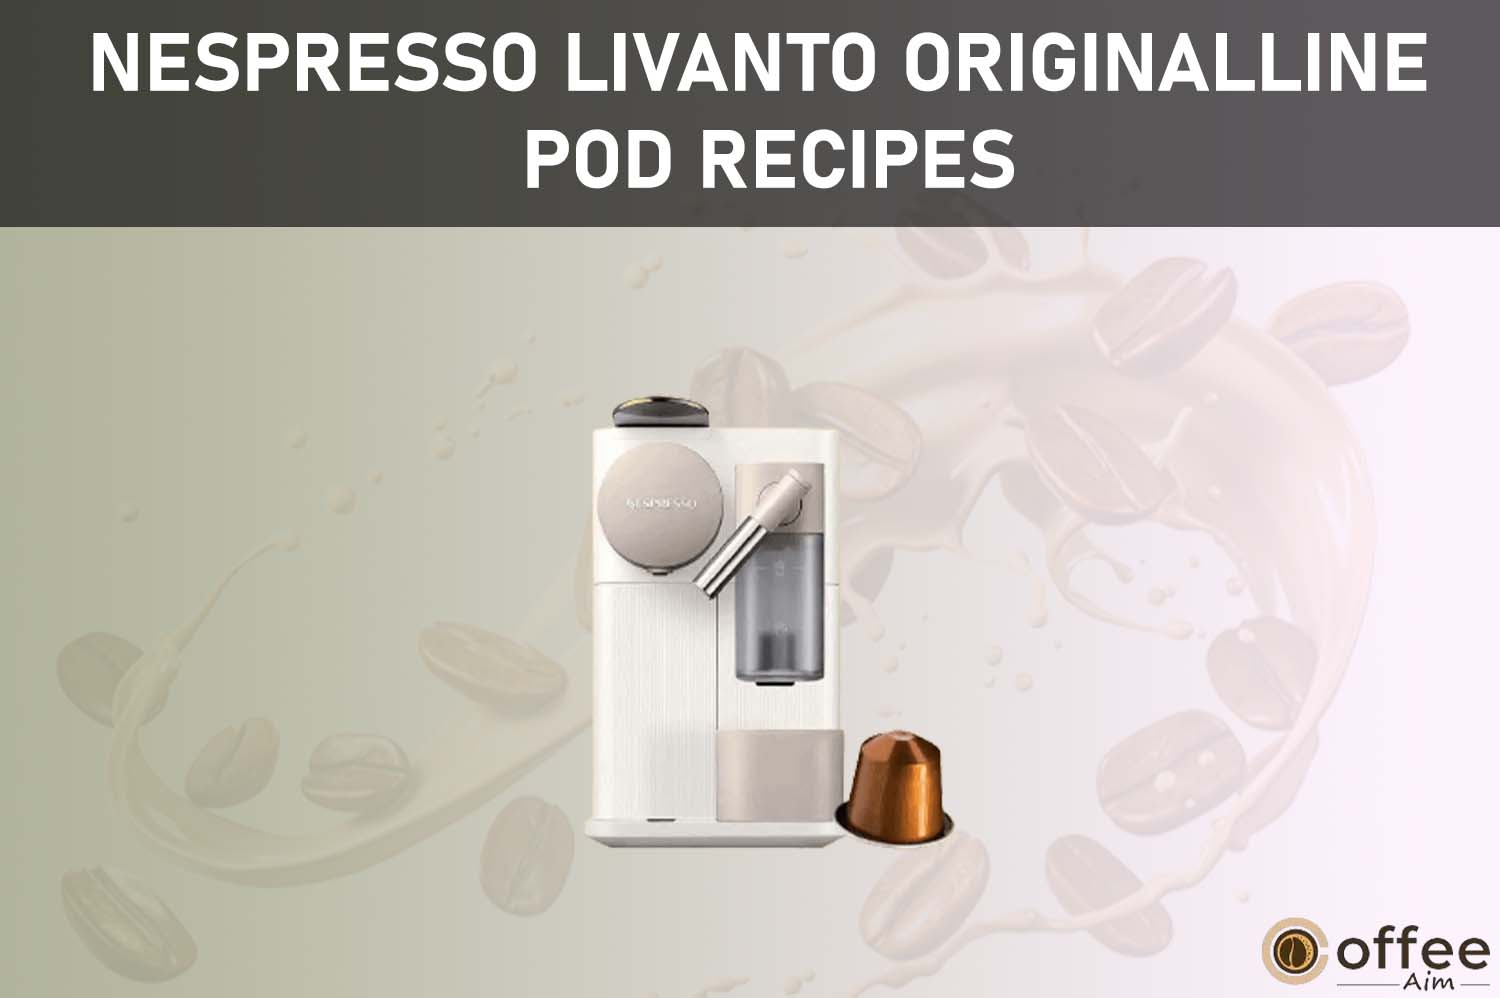 Featured image for the article "Nespresso Livanto OriginalLine Pod Recipes"